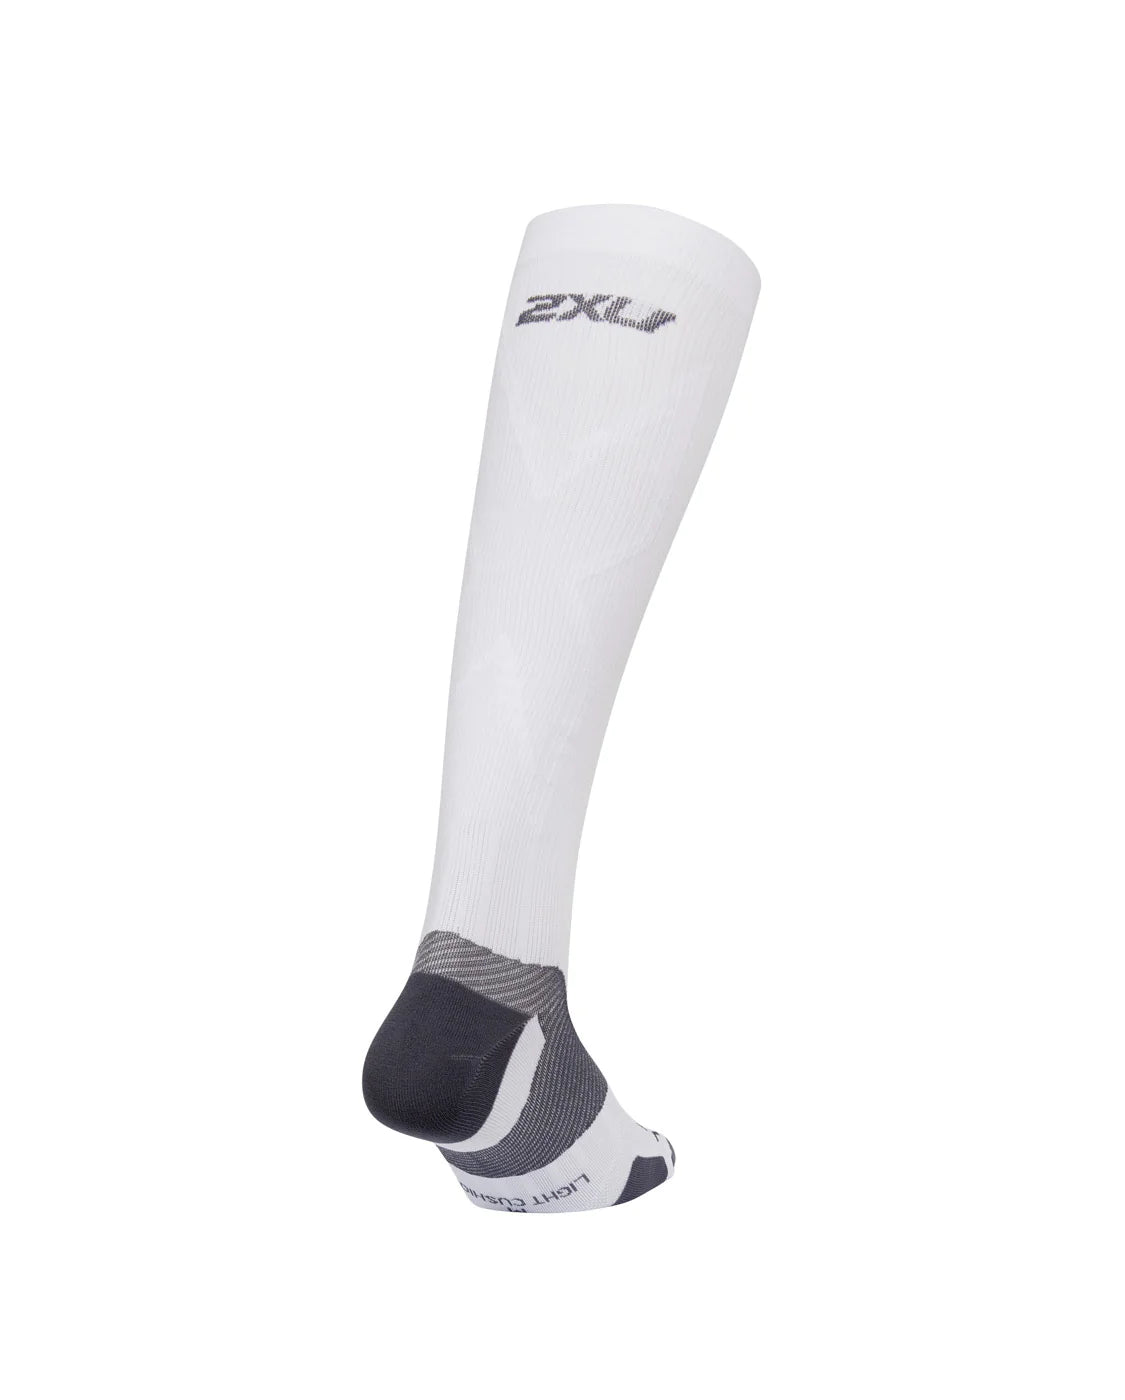 2XU VECTR L.Cush Full Length Socks, White/Grey